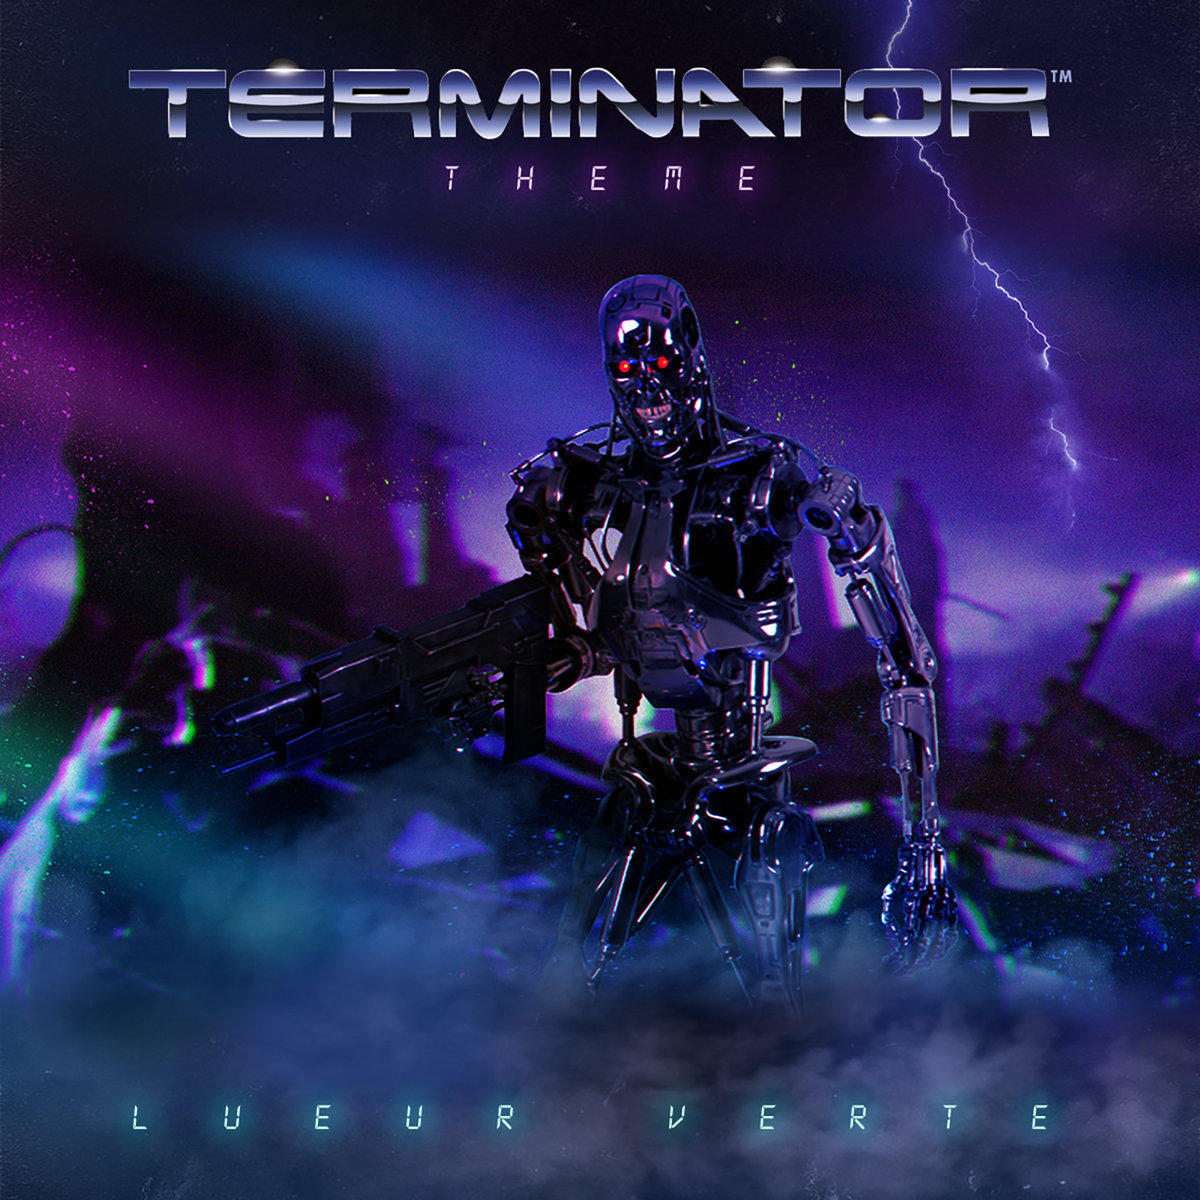 Музыка из терминатора слушать. Терминатор музыка. Терминатор 2 саундтрек. OST Terminator (1991).